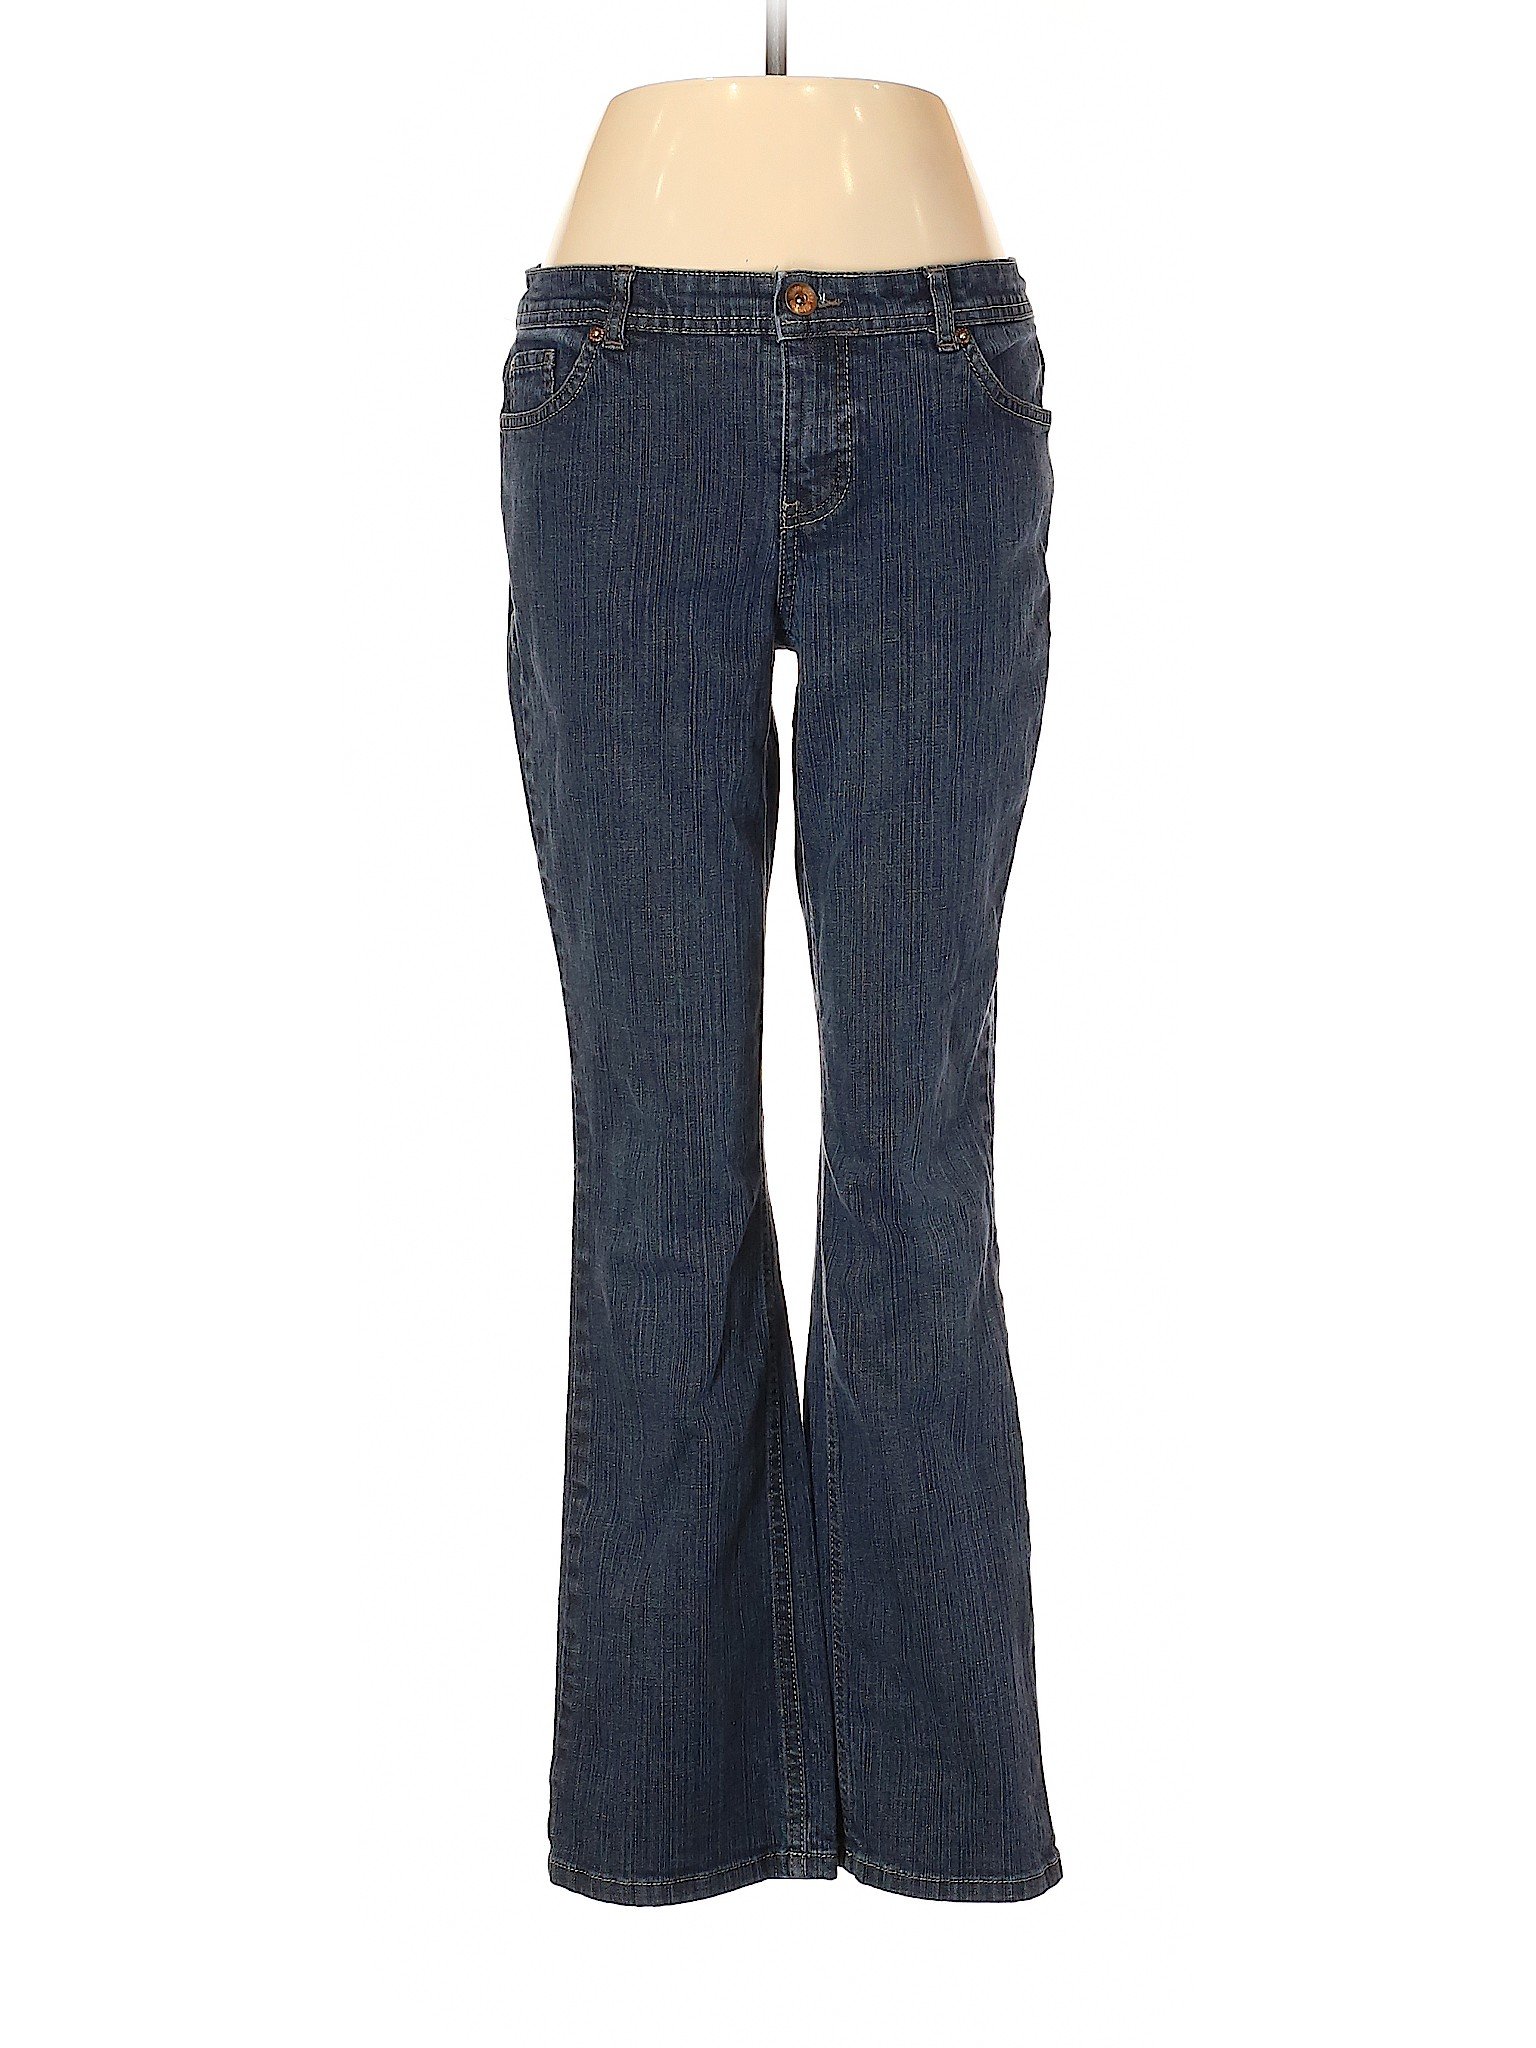 Faded Glory Women Blue Jeans 8 Petites | eBay